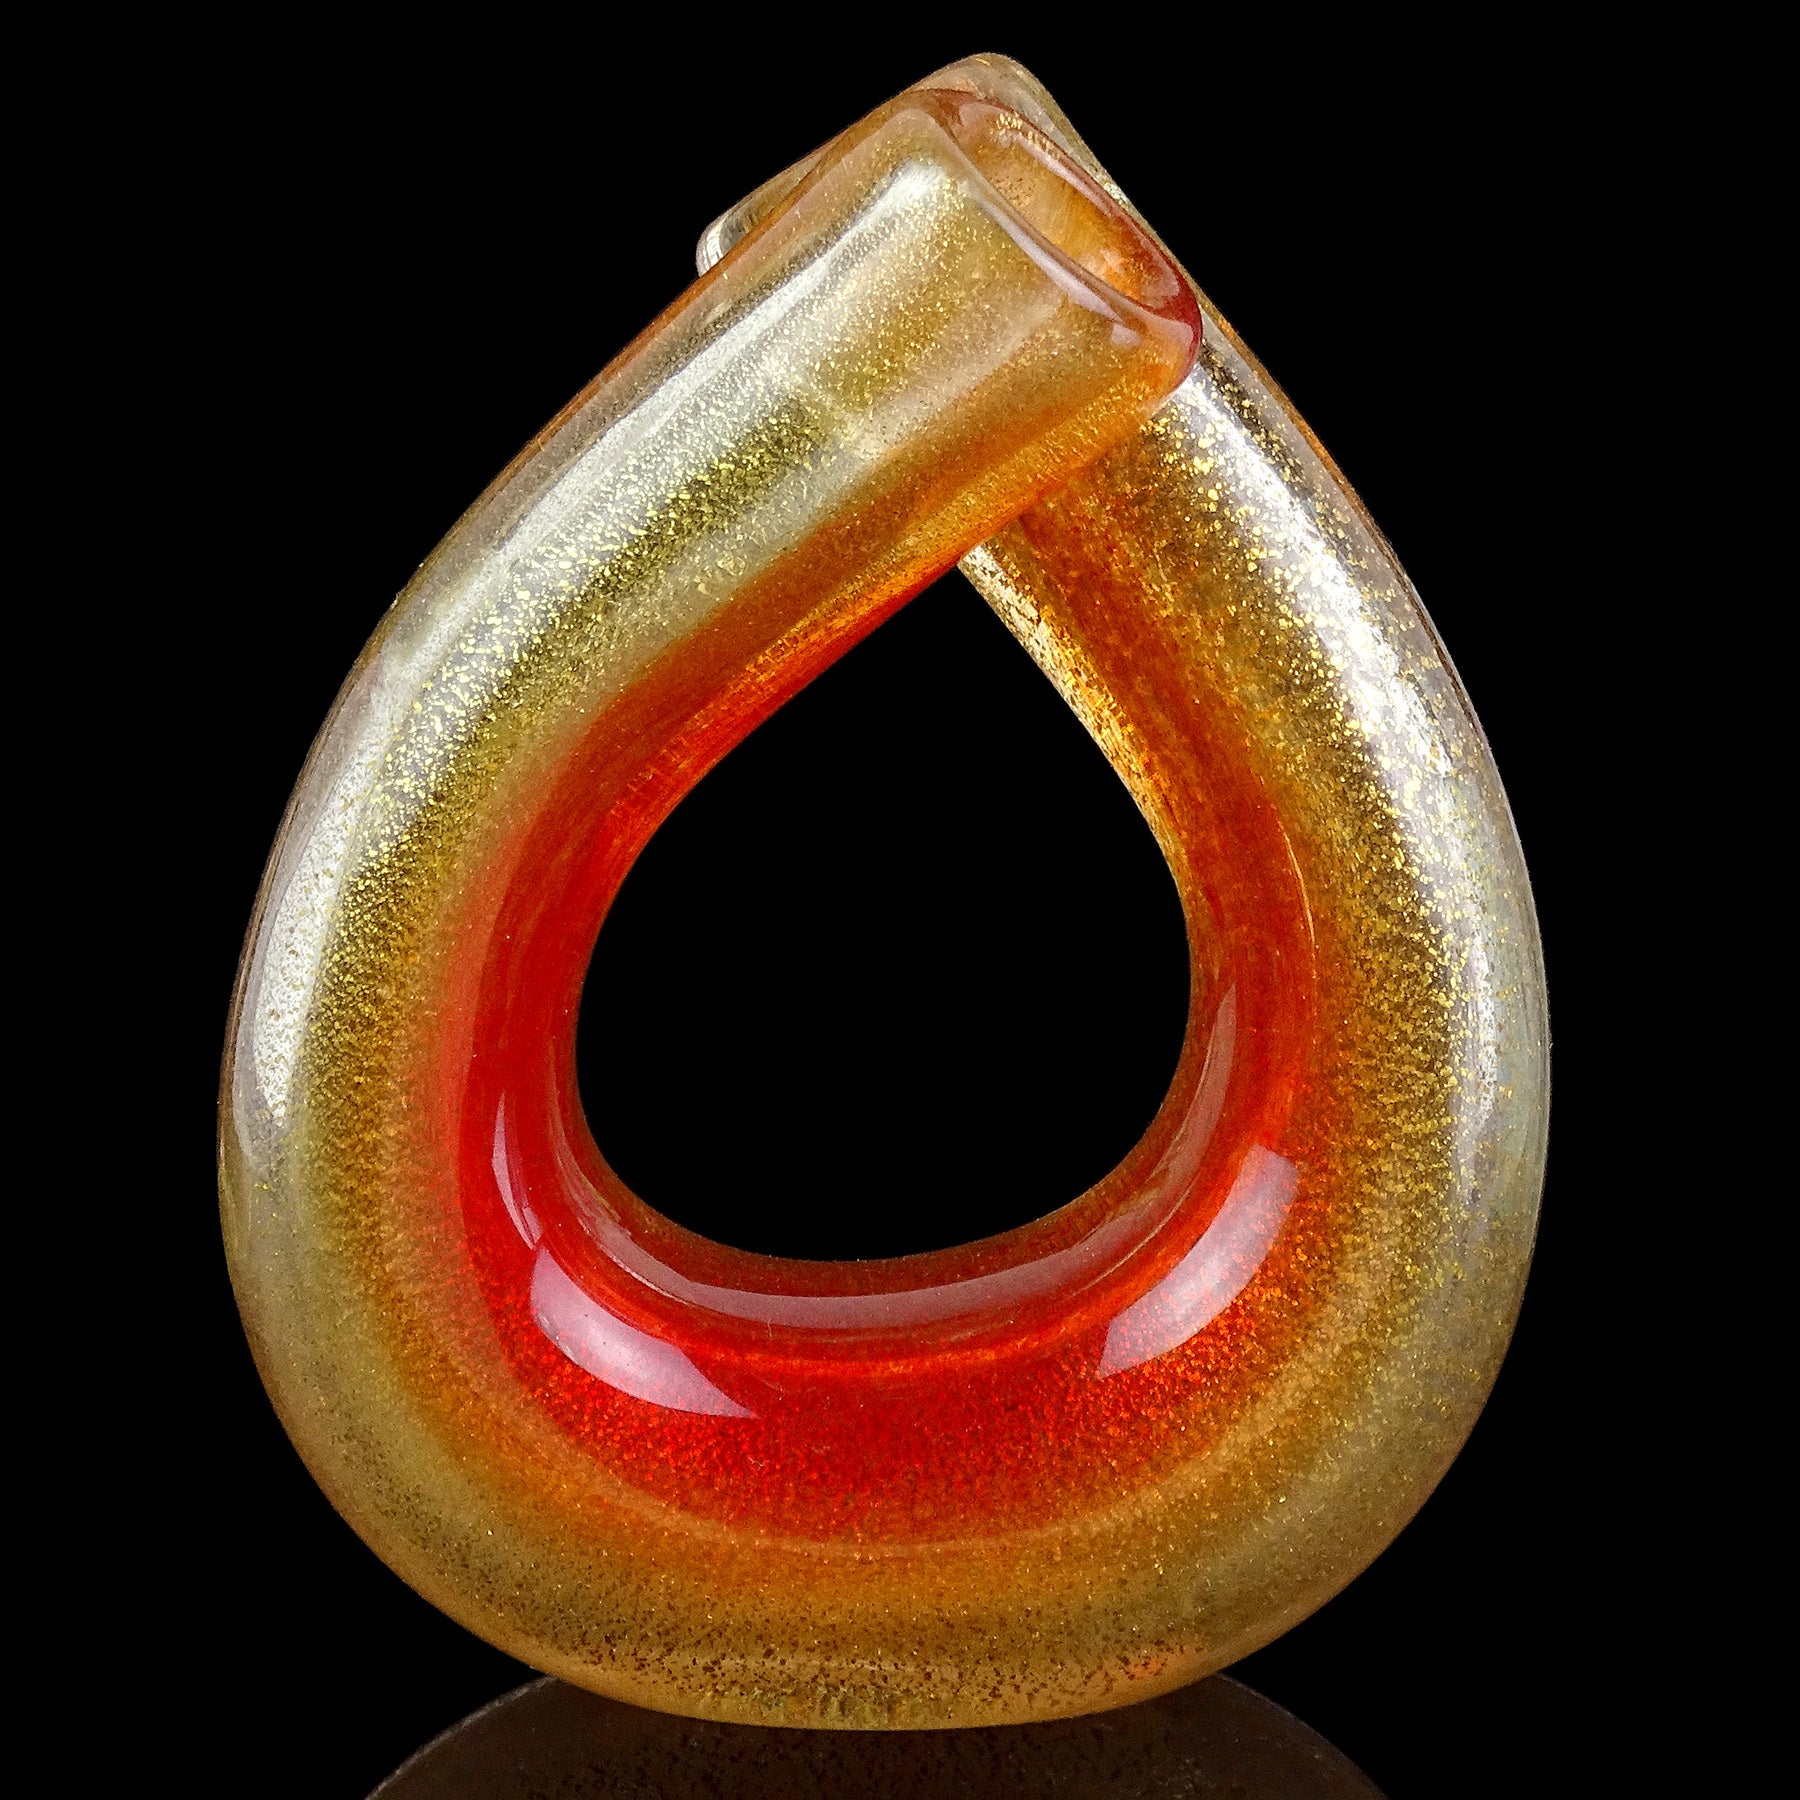 Magnifique et rare vase à double bec en verre d'art italien soufflé à la main à Murano, de couleur rouge-orange et mouchetures d'or. Attestée au designer Archimede Seguso, et réalisée selon la technique 